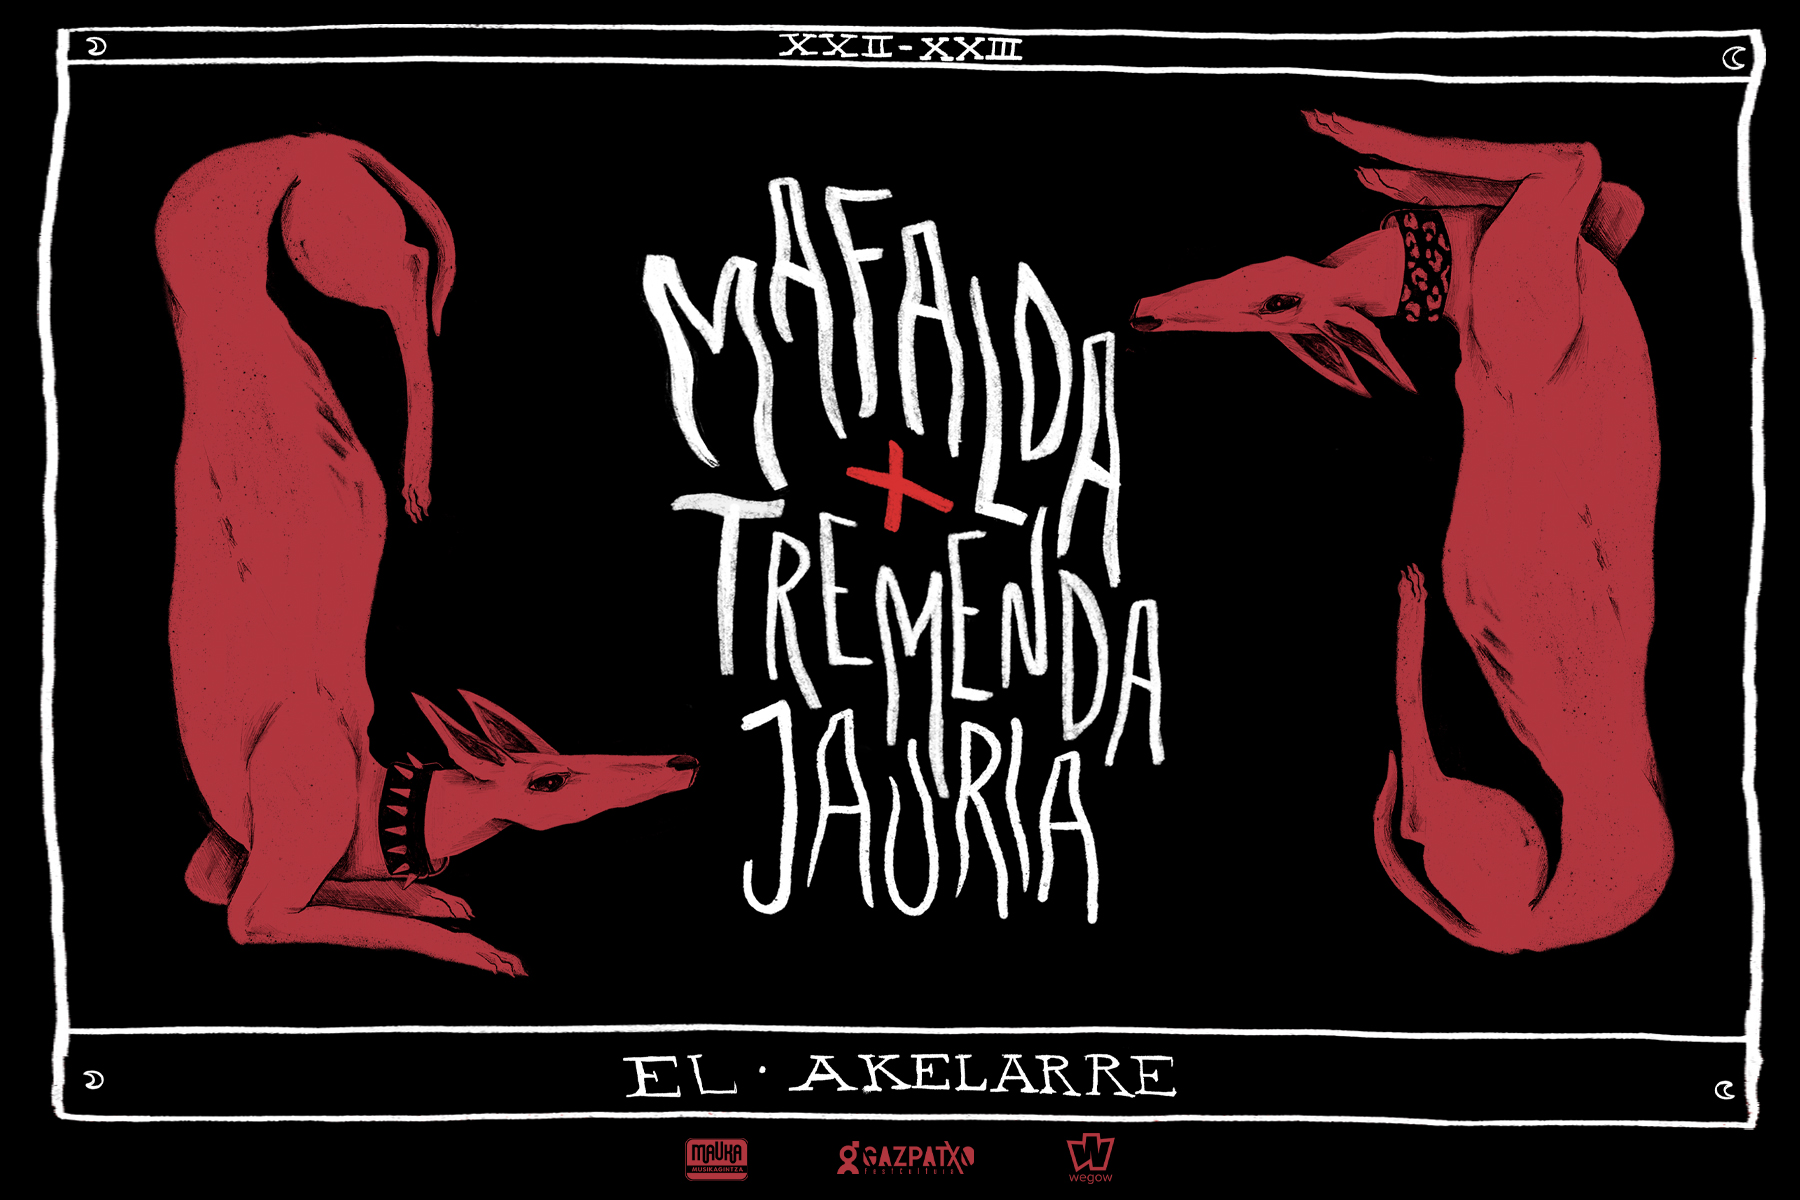 El Akelarre, la gira conjunta de Mafalda y Tremenda Jauría